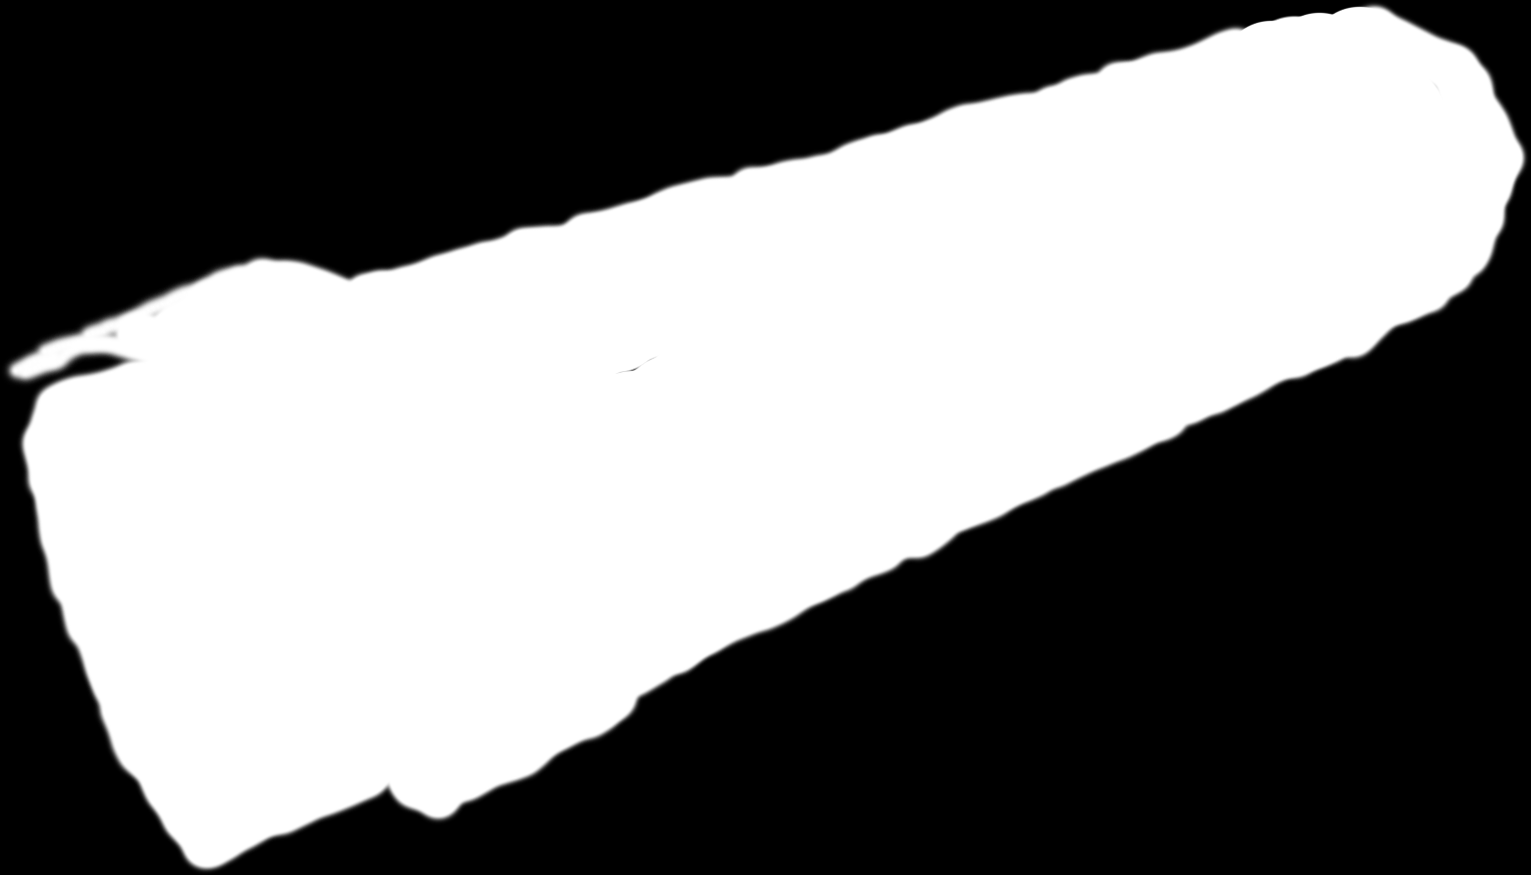 Scitala dal greco bastone, è una bacchetta rastremata utilizzata dagli Spartani per trasmettere messaggi segreti il messaggio scritto su una striscia di pelle arrotolata attorno alla scitala